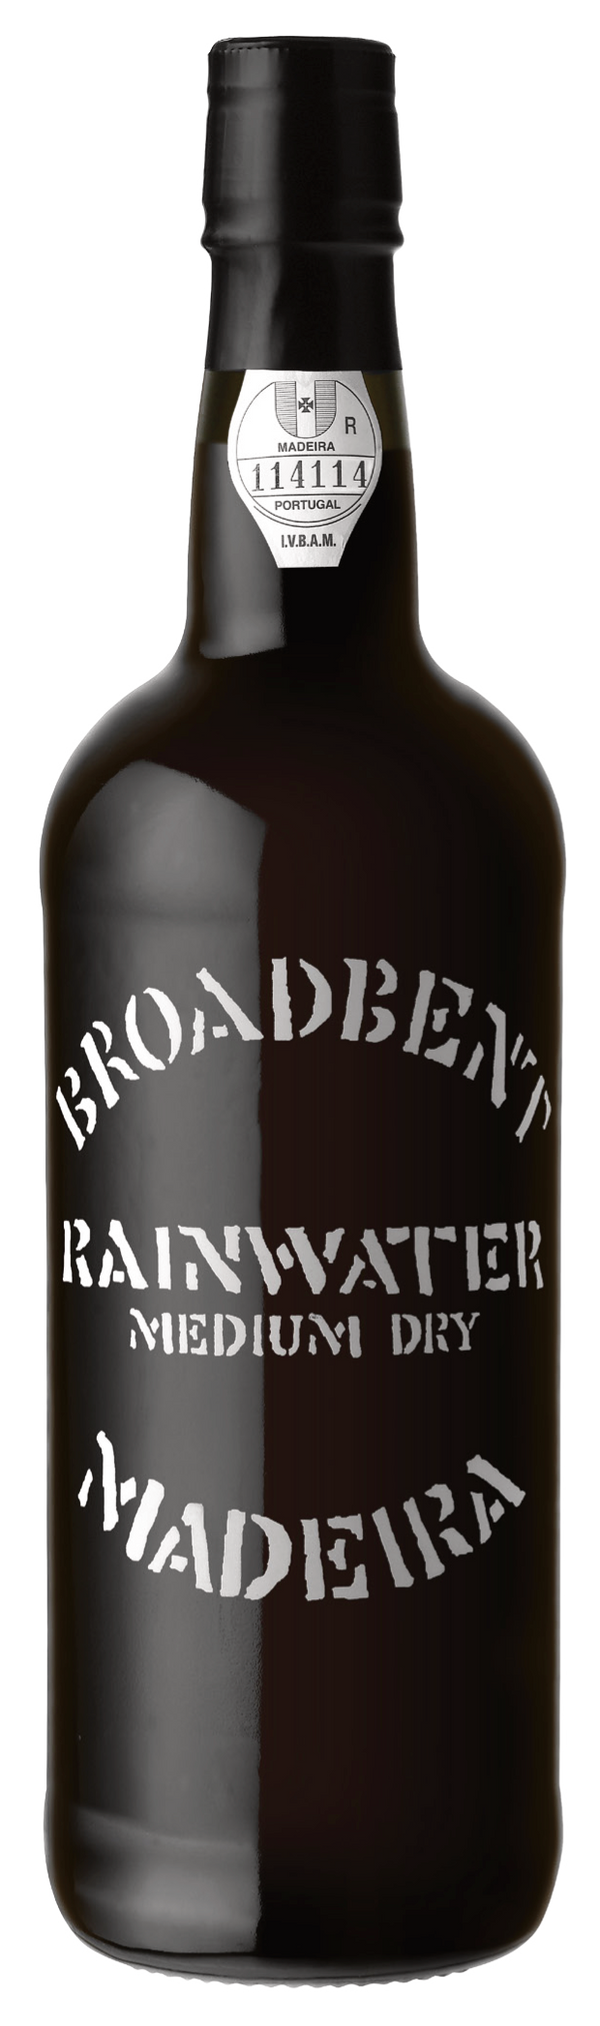 Broadbent Rainwater Madeira 3yr Med-Dry NV